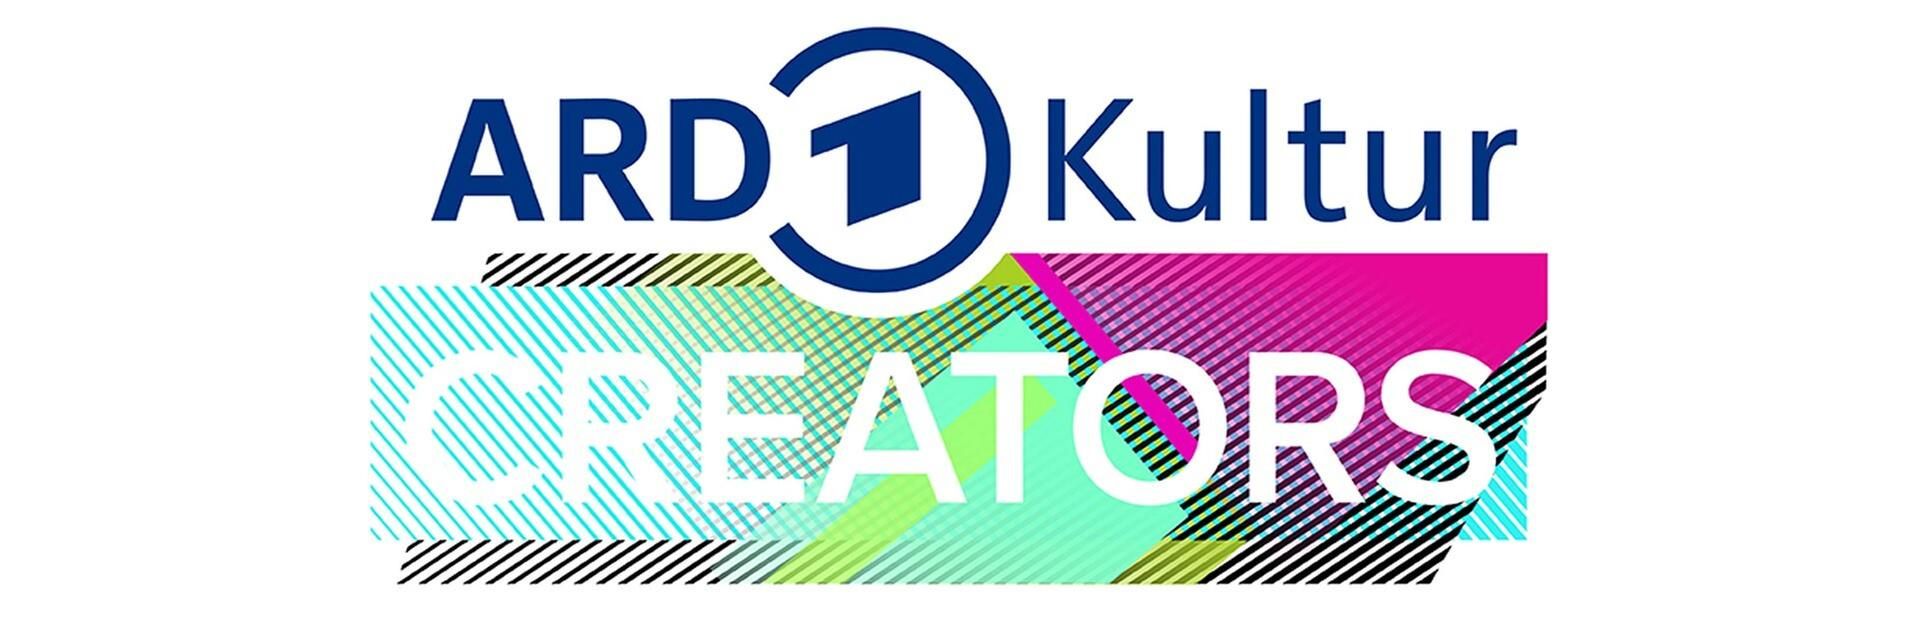 ARD Kultur Creators: Die Projekte